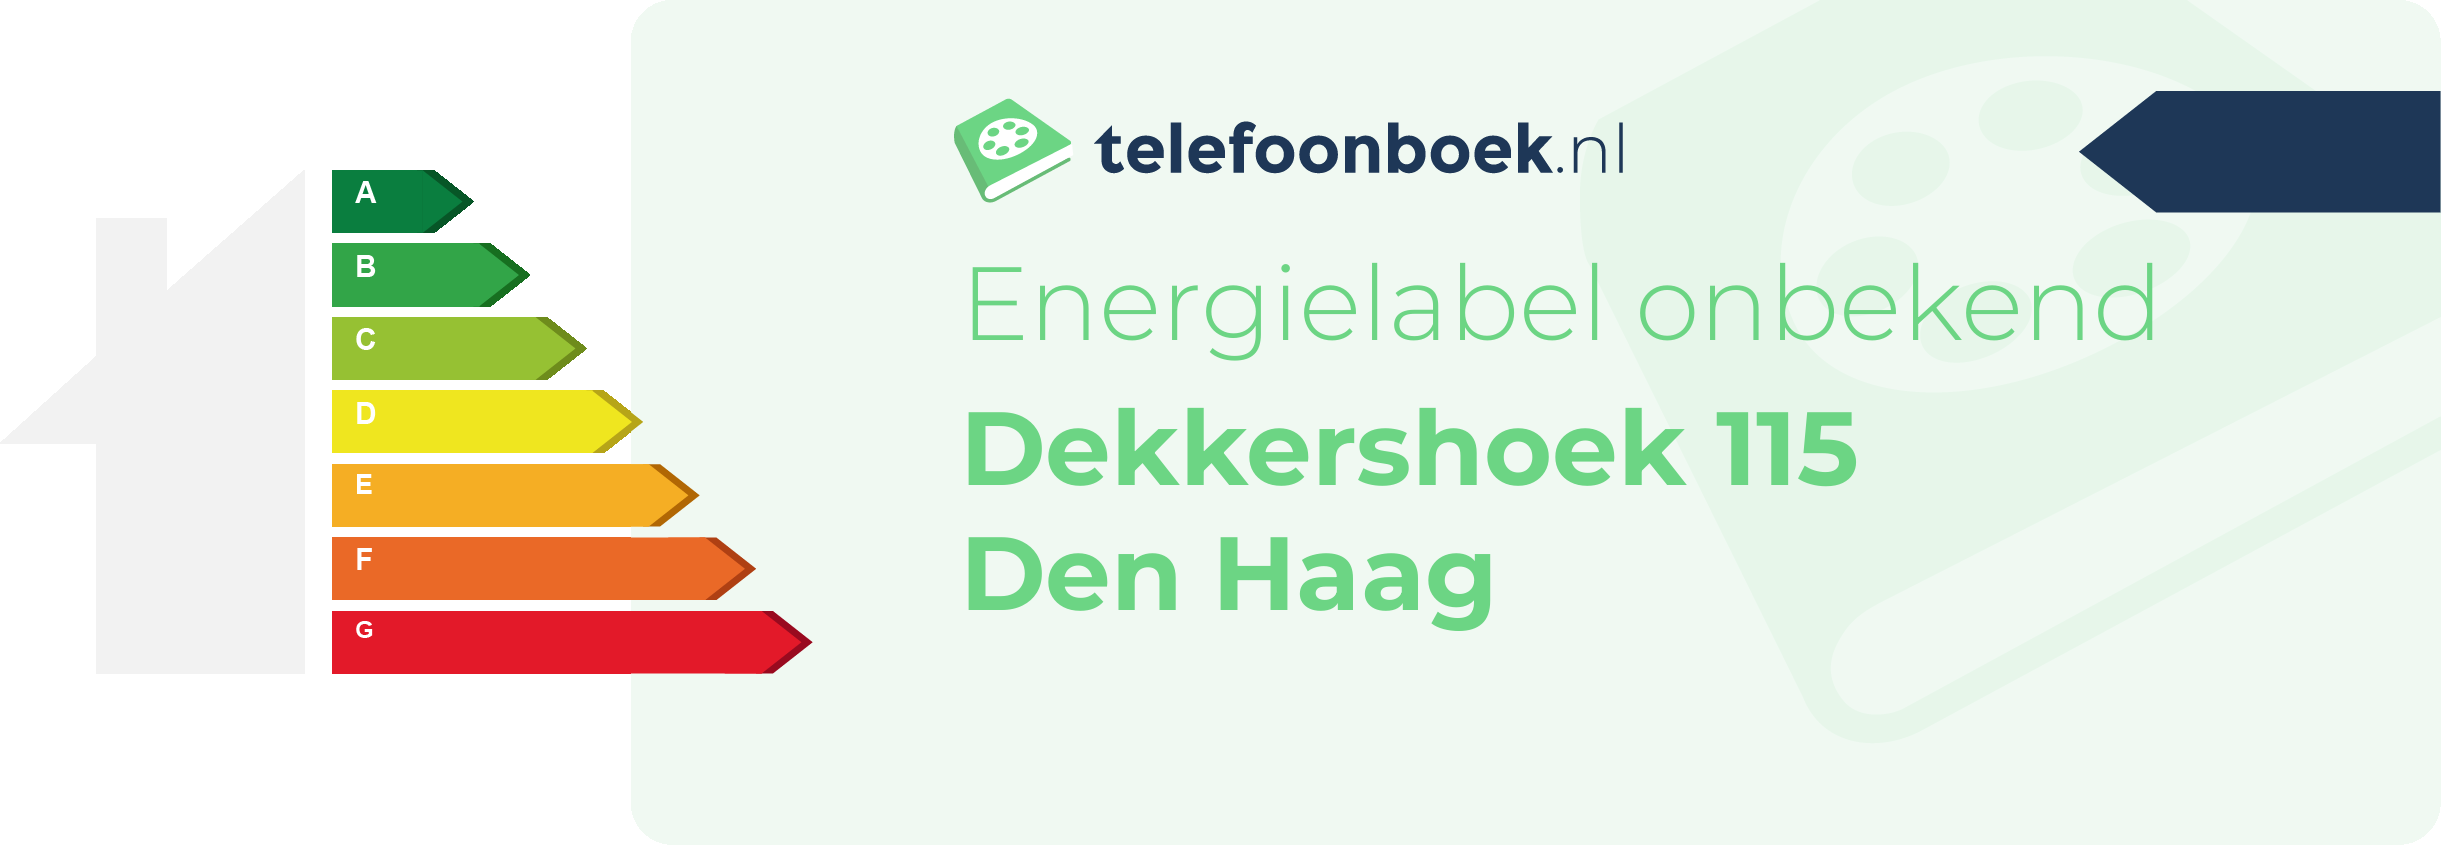 Energielabel Dekkershoek 115 Den Haag